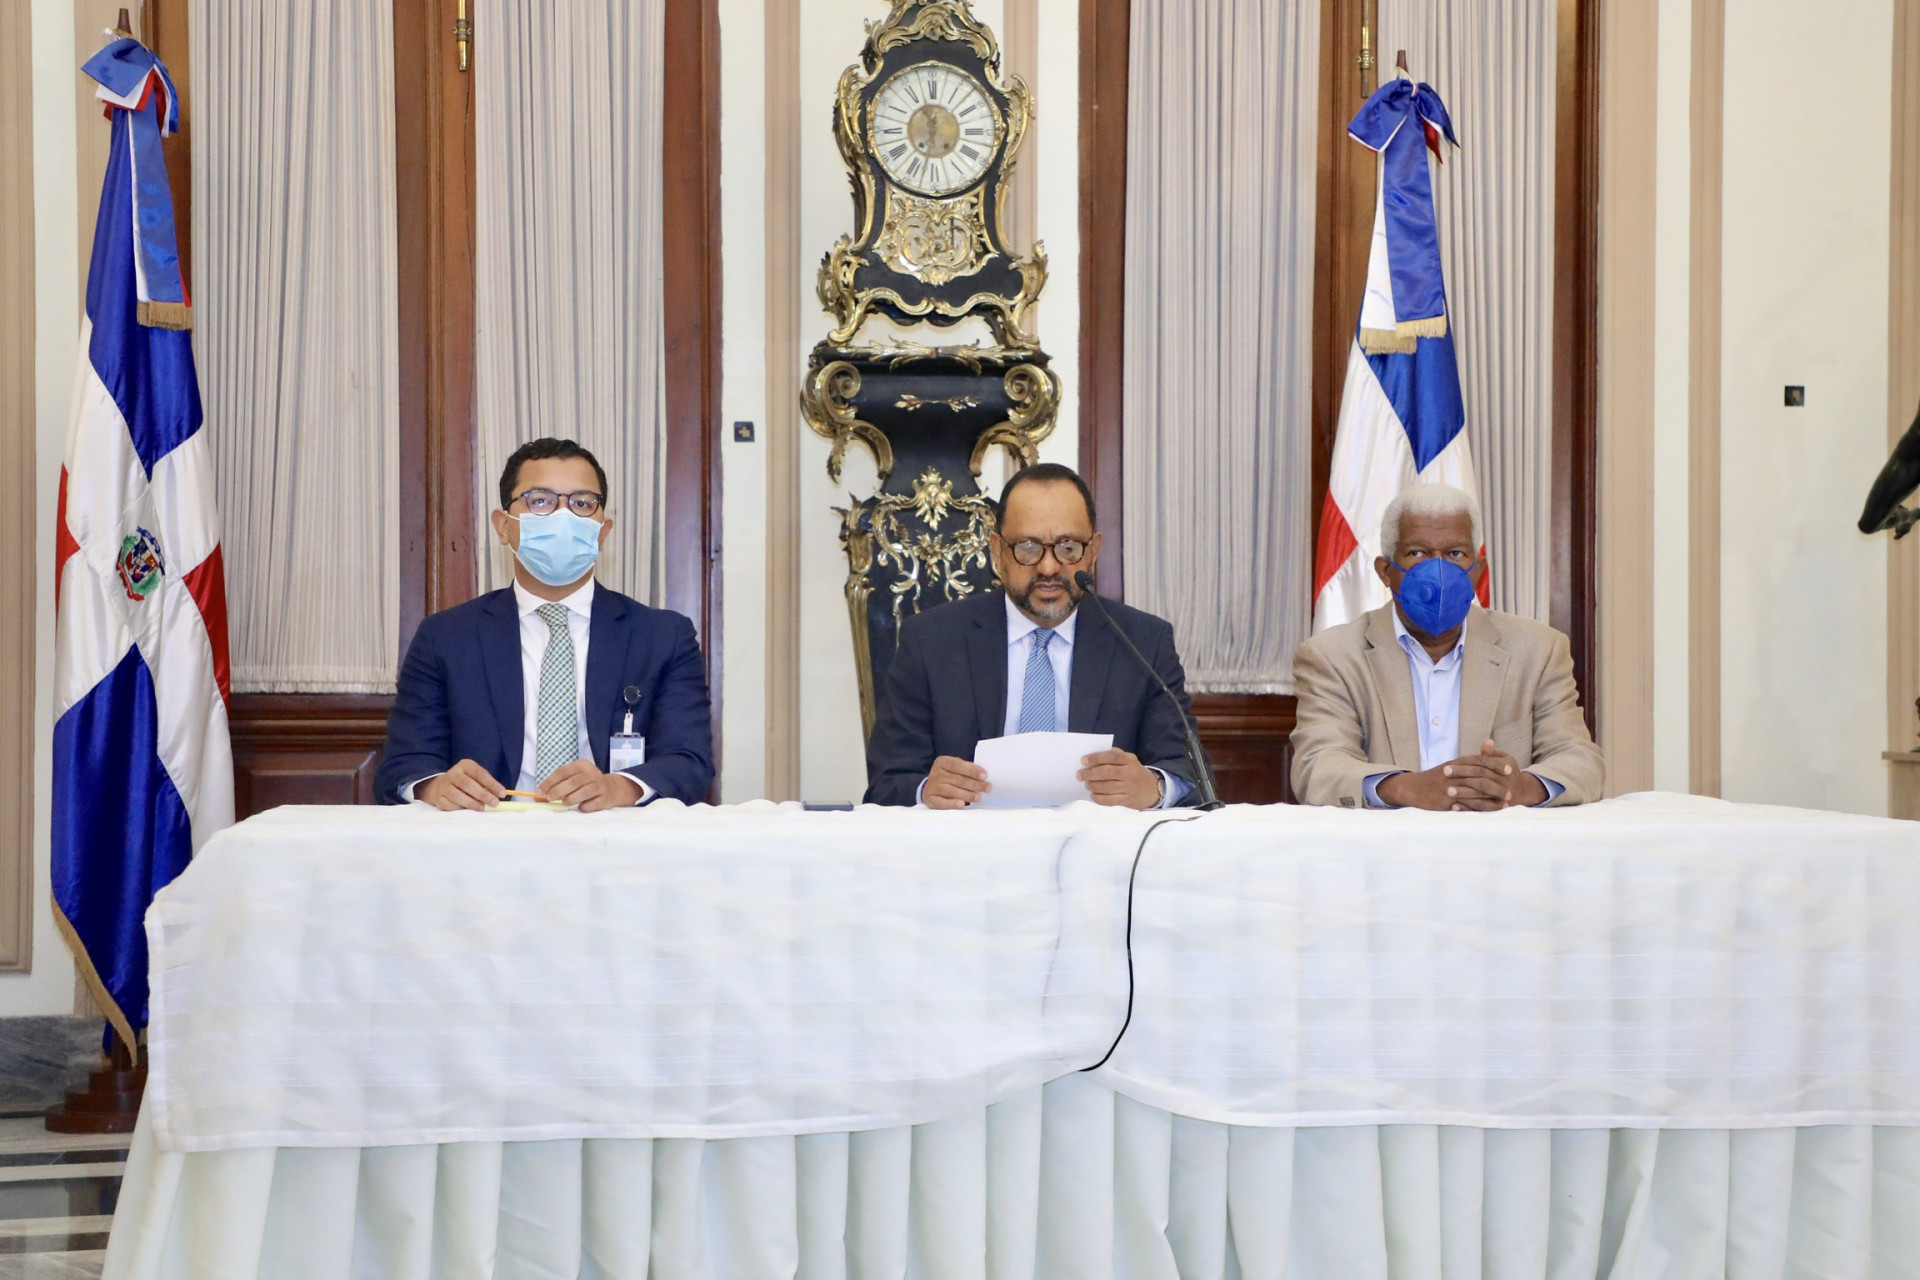 REPÚBLICA DOMINICANA: Gobierno anuncia revisión y terminación de contratos con Odebrecht